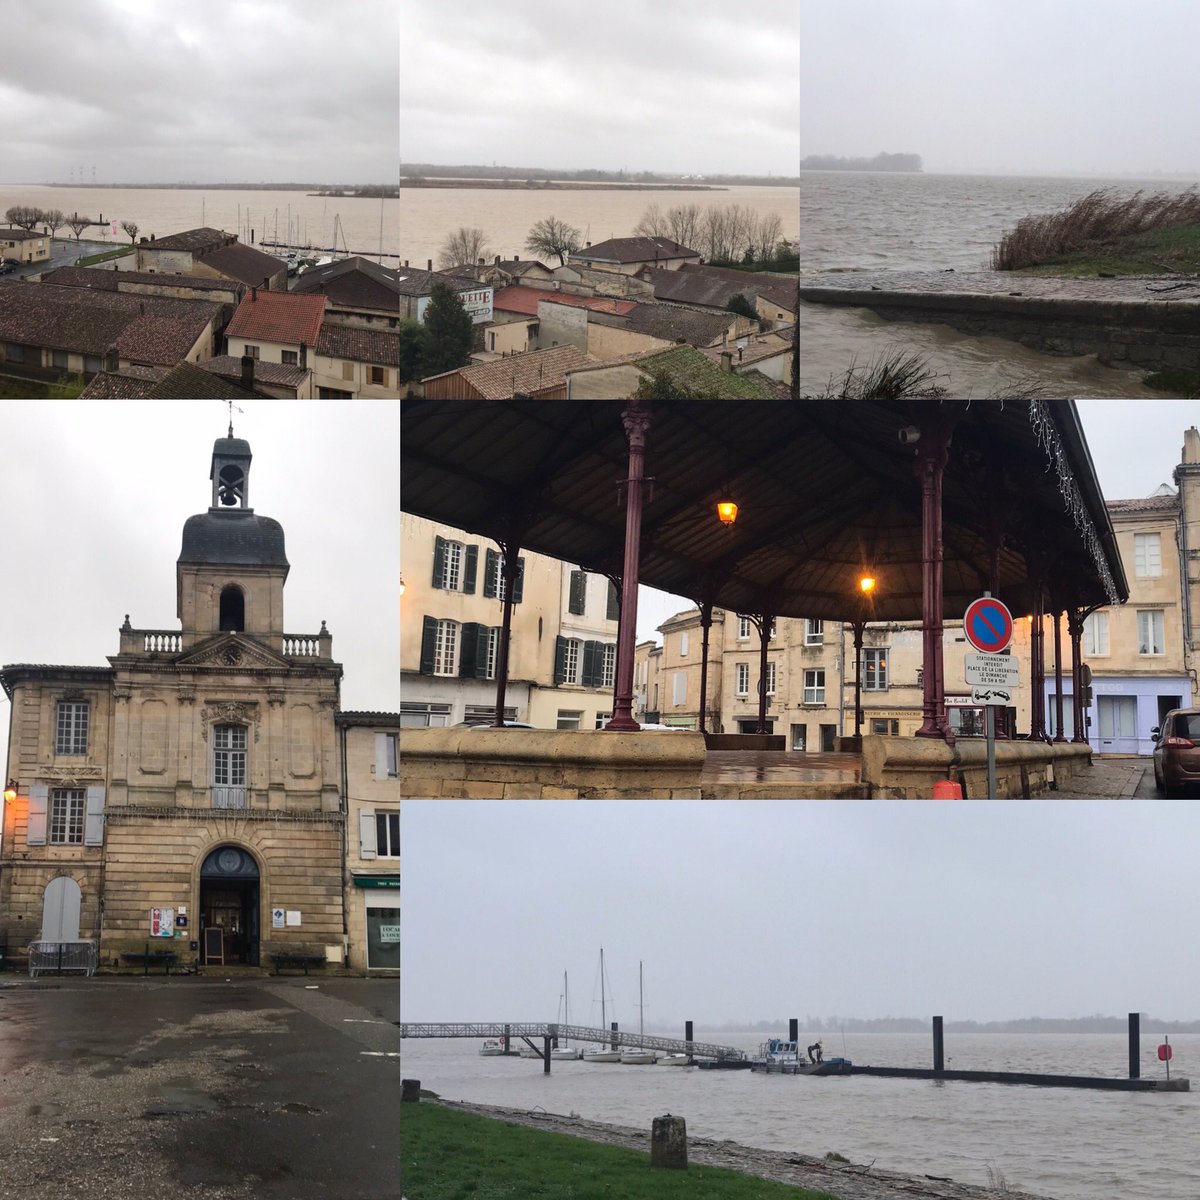 Temps pourri pour une petite balade le long de la Gironde #regiondebordeaux #nouvelleaquitaine #aquitaine #bourg #saintandredecubzac #vacances #decouverte #promenade